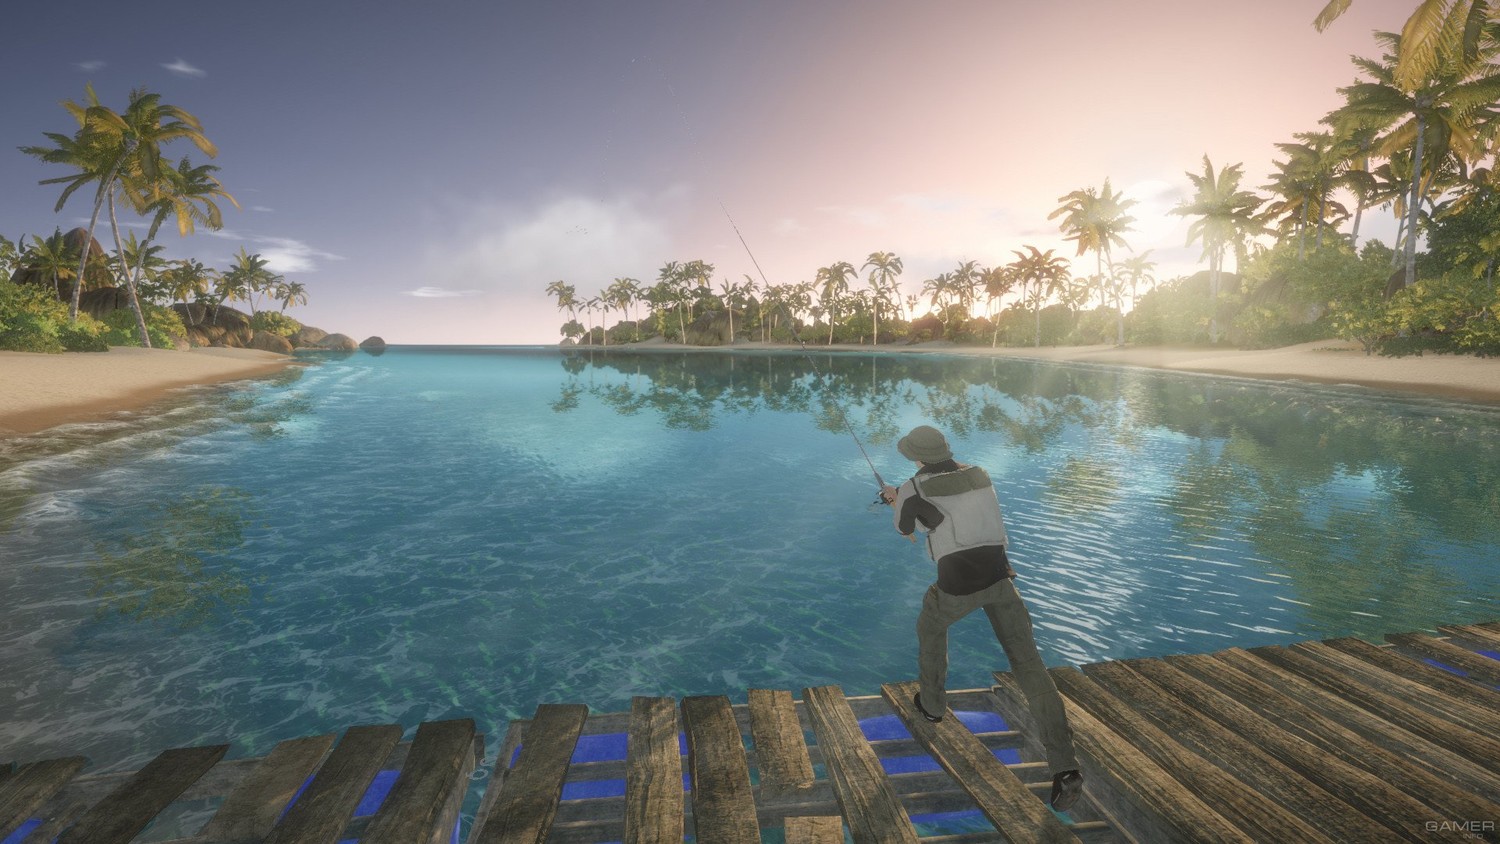 Скриншот 2 к игре Pro Fishing Simulator  (2018)  RePack от xatab